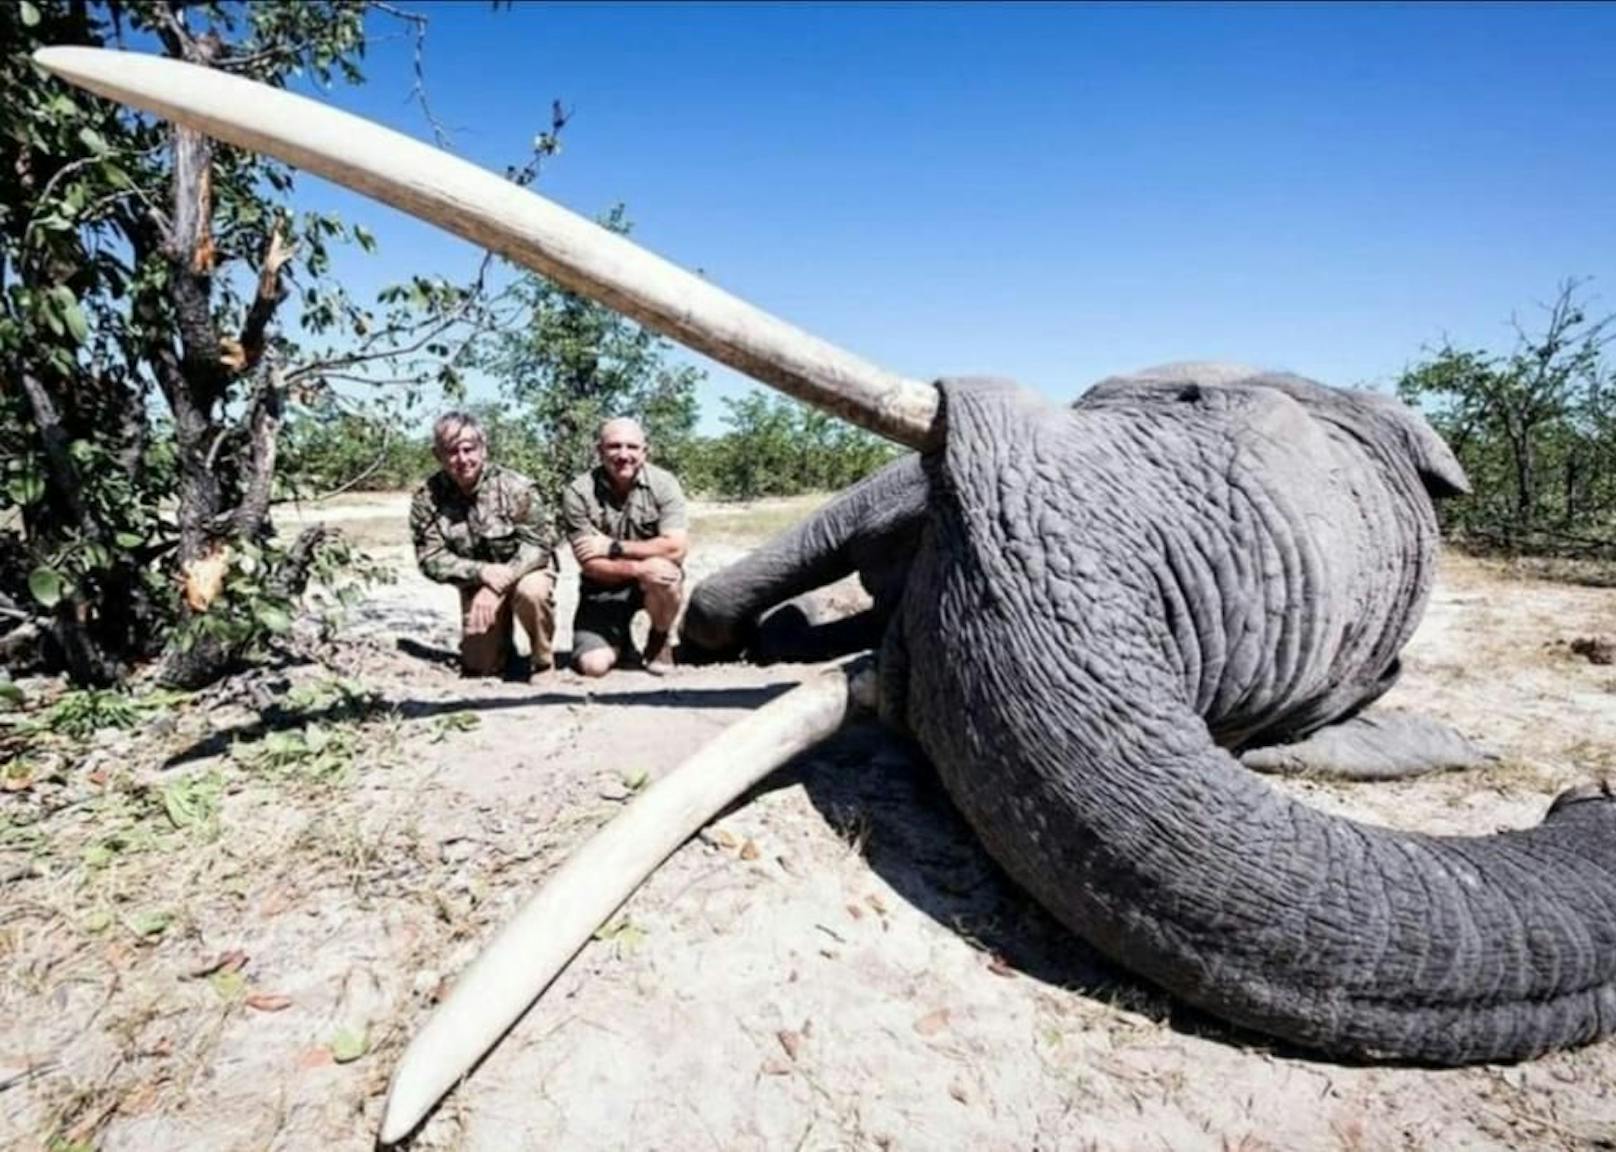 Trophäenjäger posiert mit totem Elefanten und erntet Shitstorm